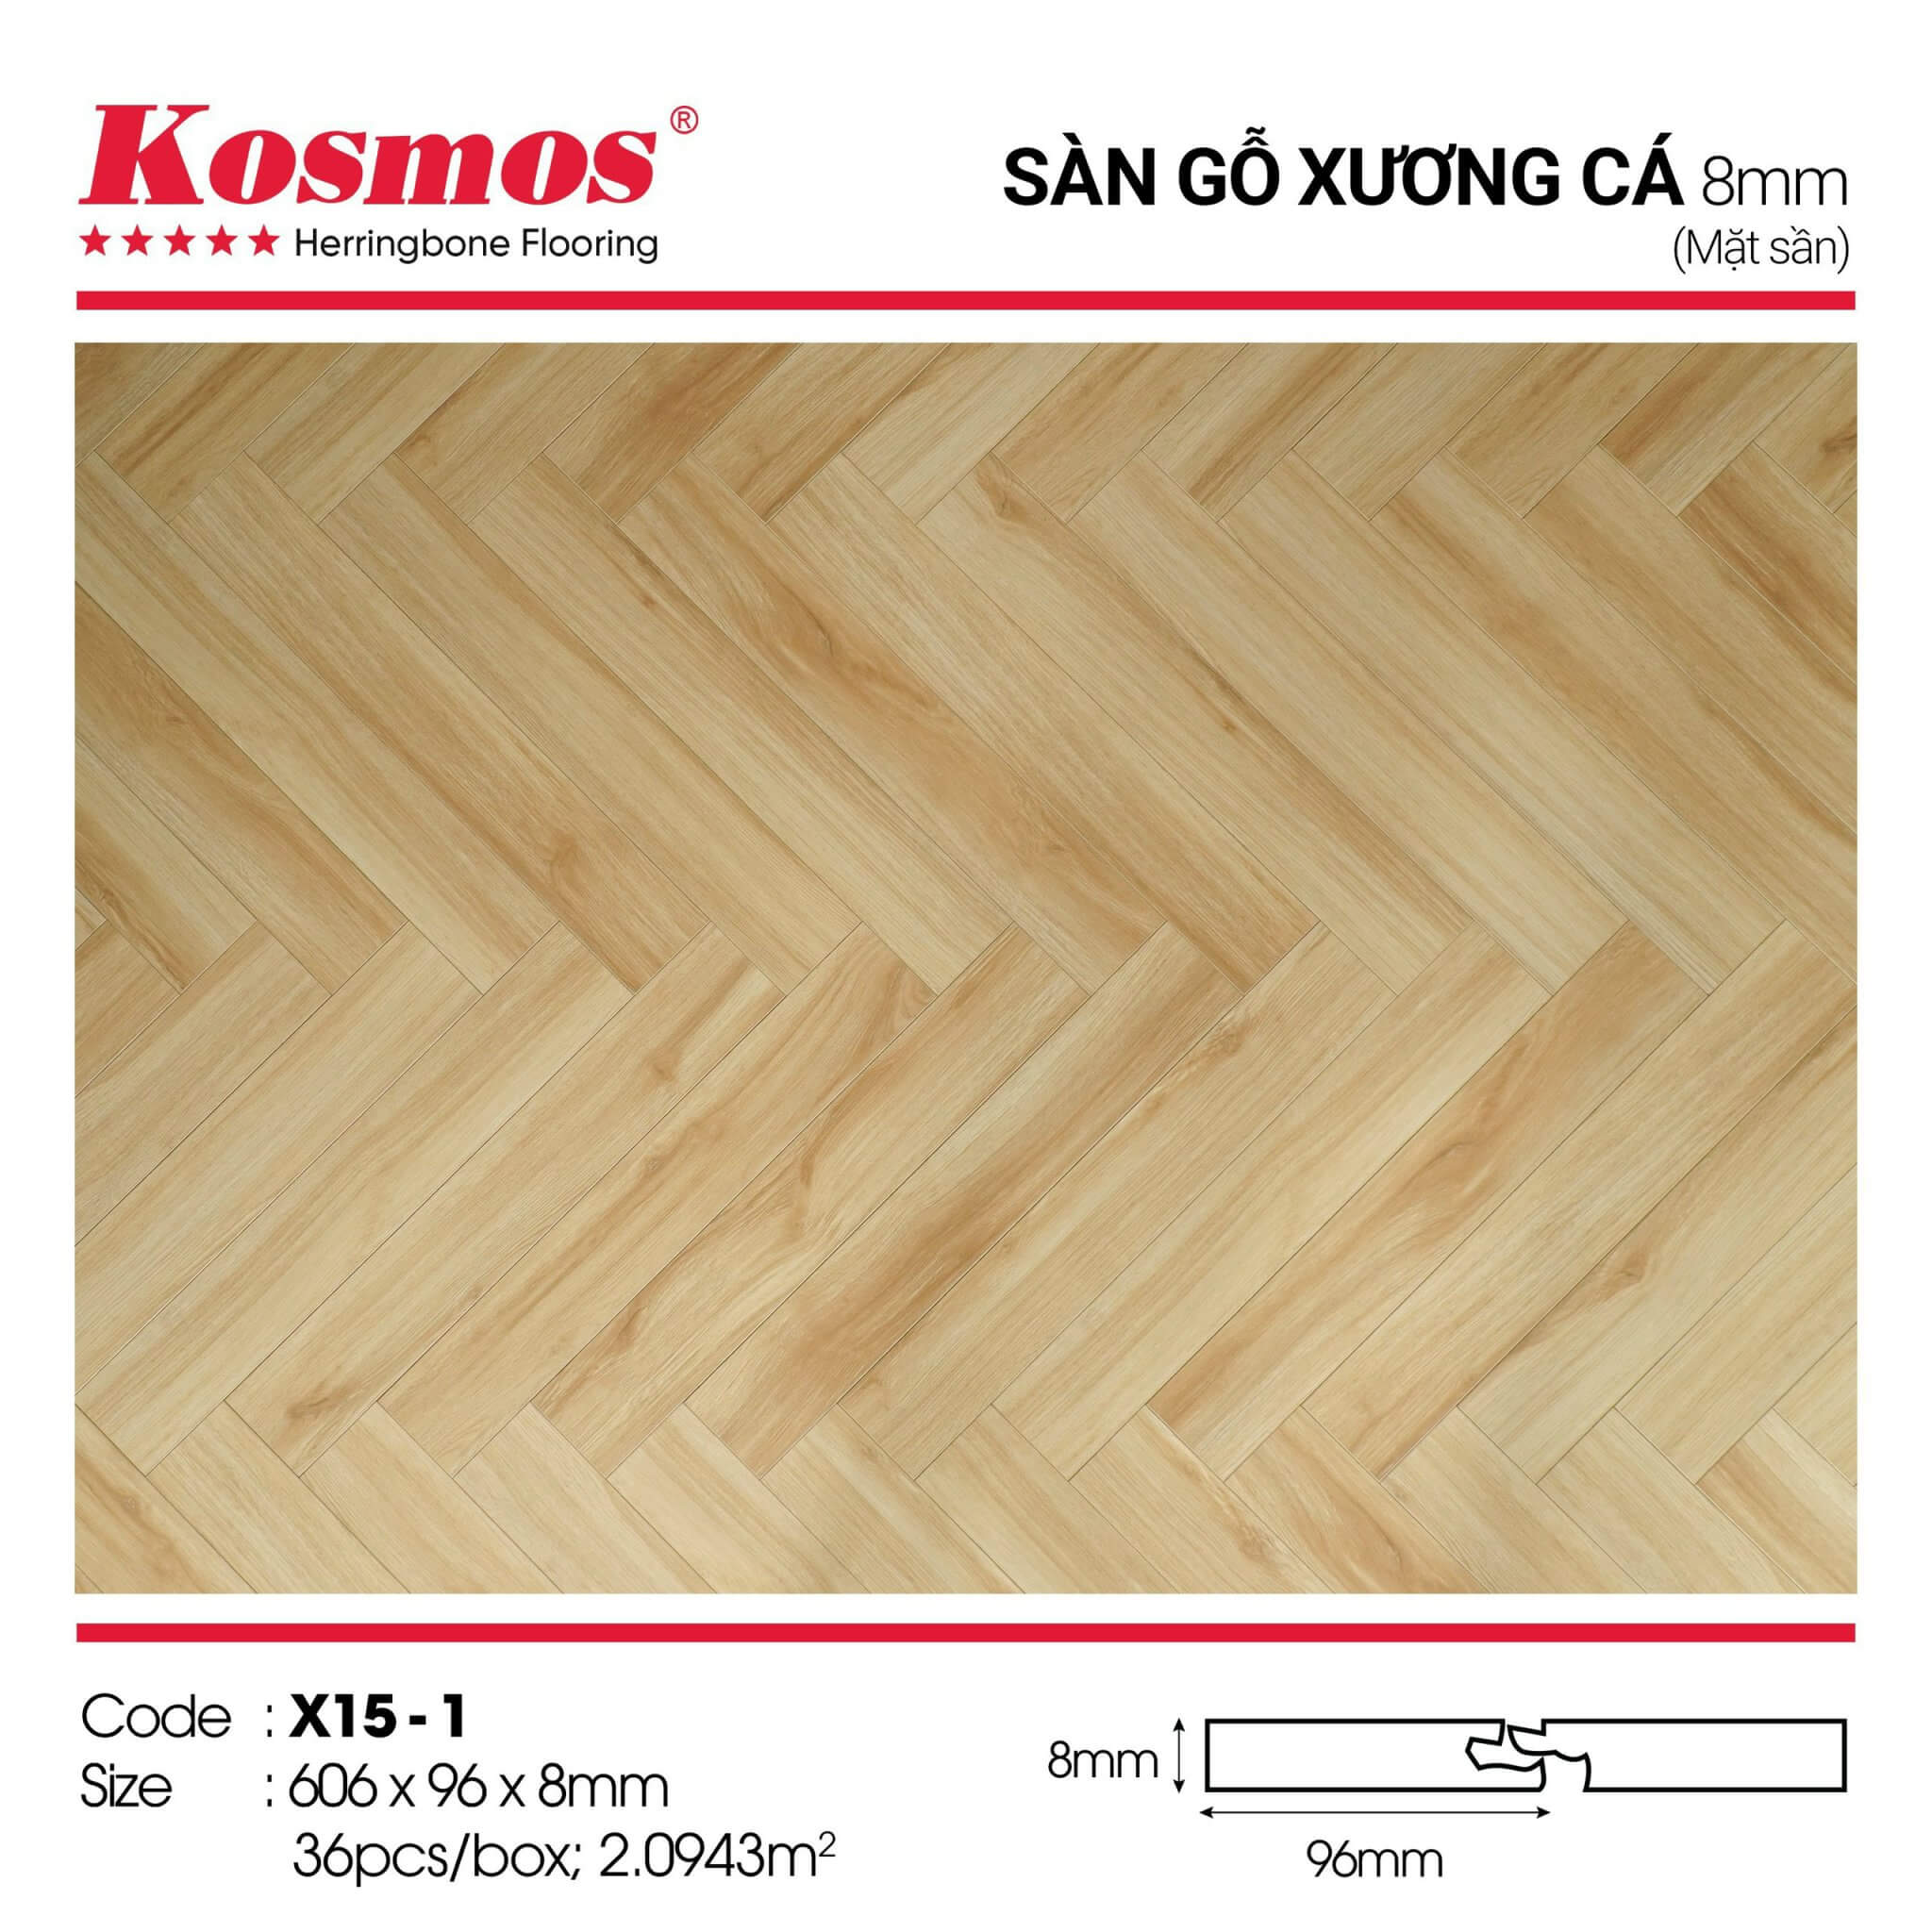 sàn gỗ công nghiệp kosmos xương cá 8mm X15-1